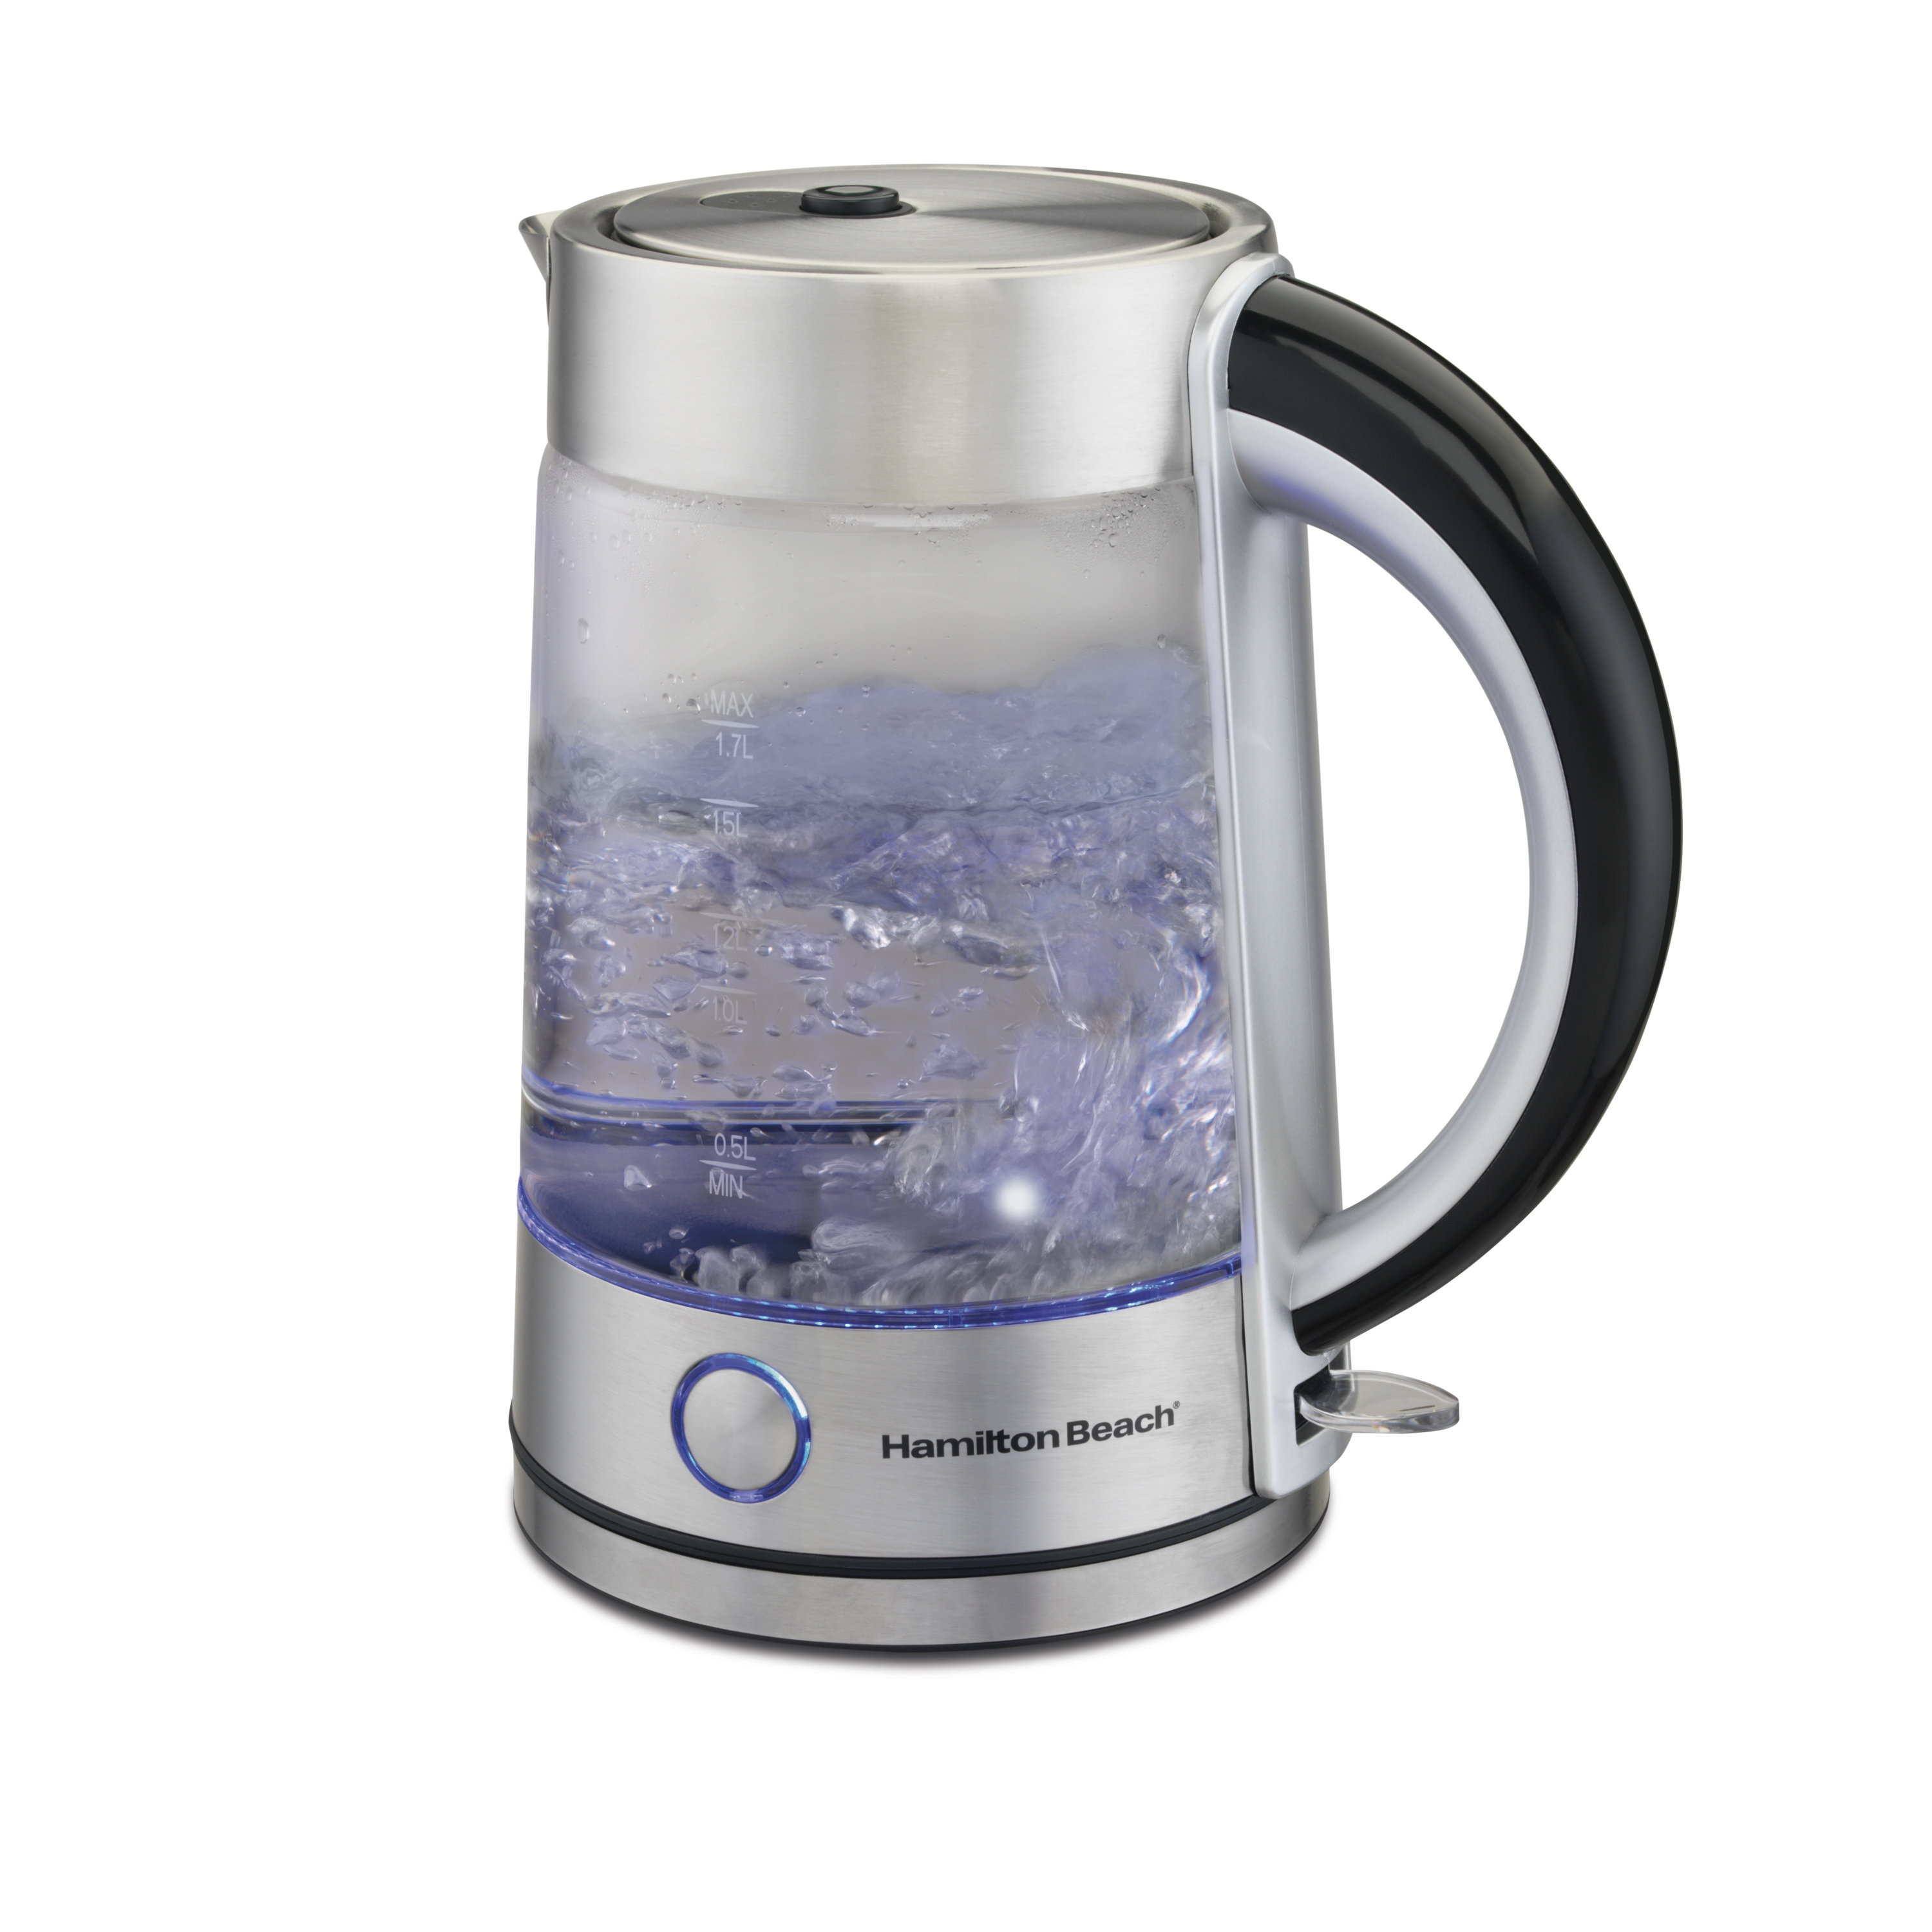 https://assets.wfcdn.com/im/91929370/compr-r85/4297/42976743/hamilton-beach-17-liter-modern-glass-electric-kettle.jpg